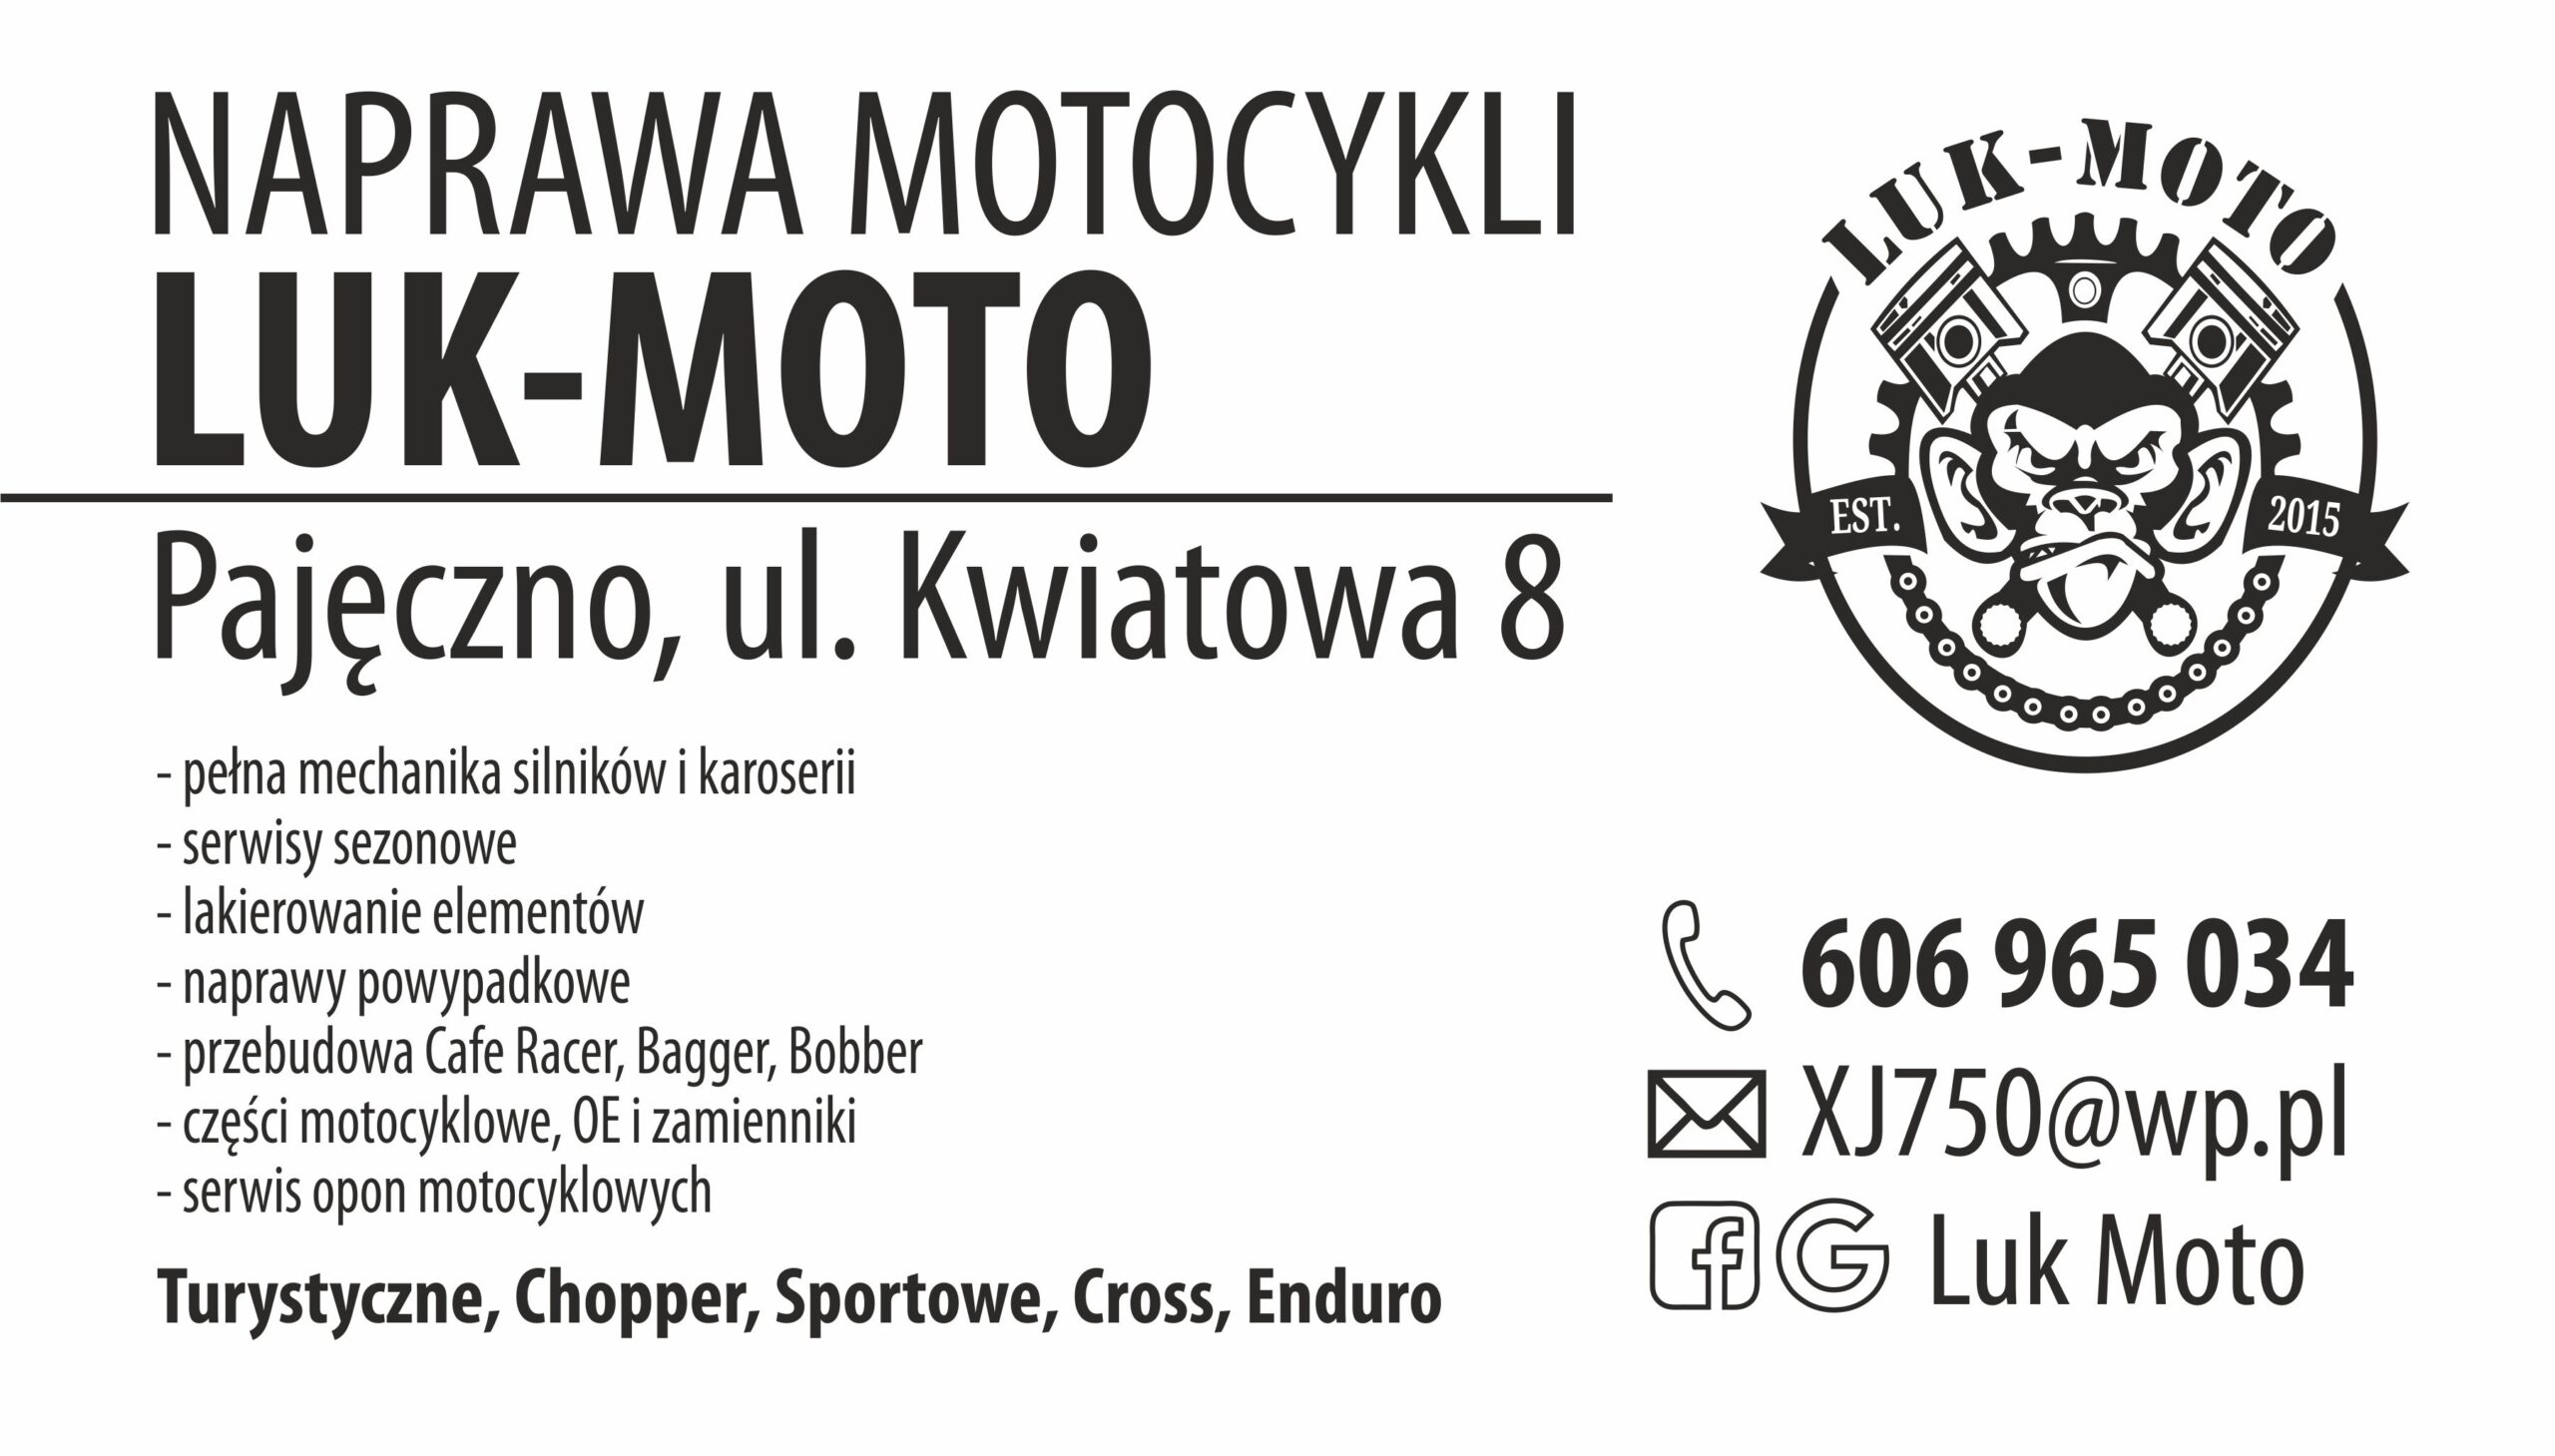 Naprawa motocykli Luk-Moto